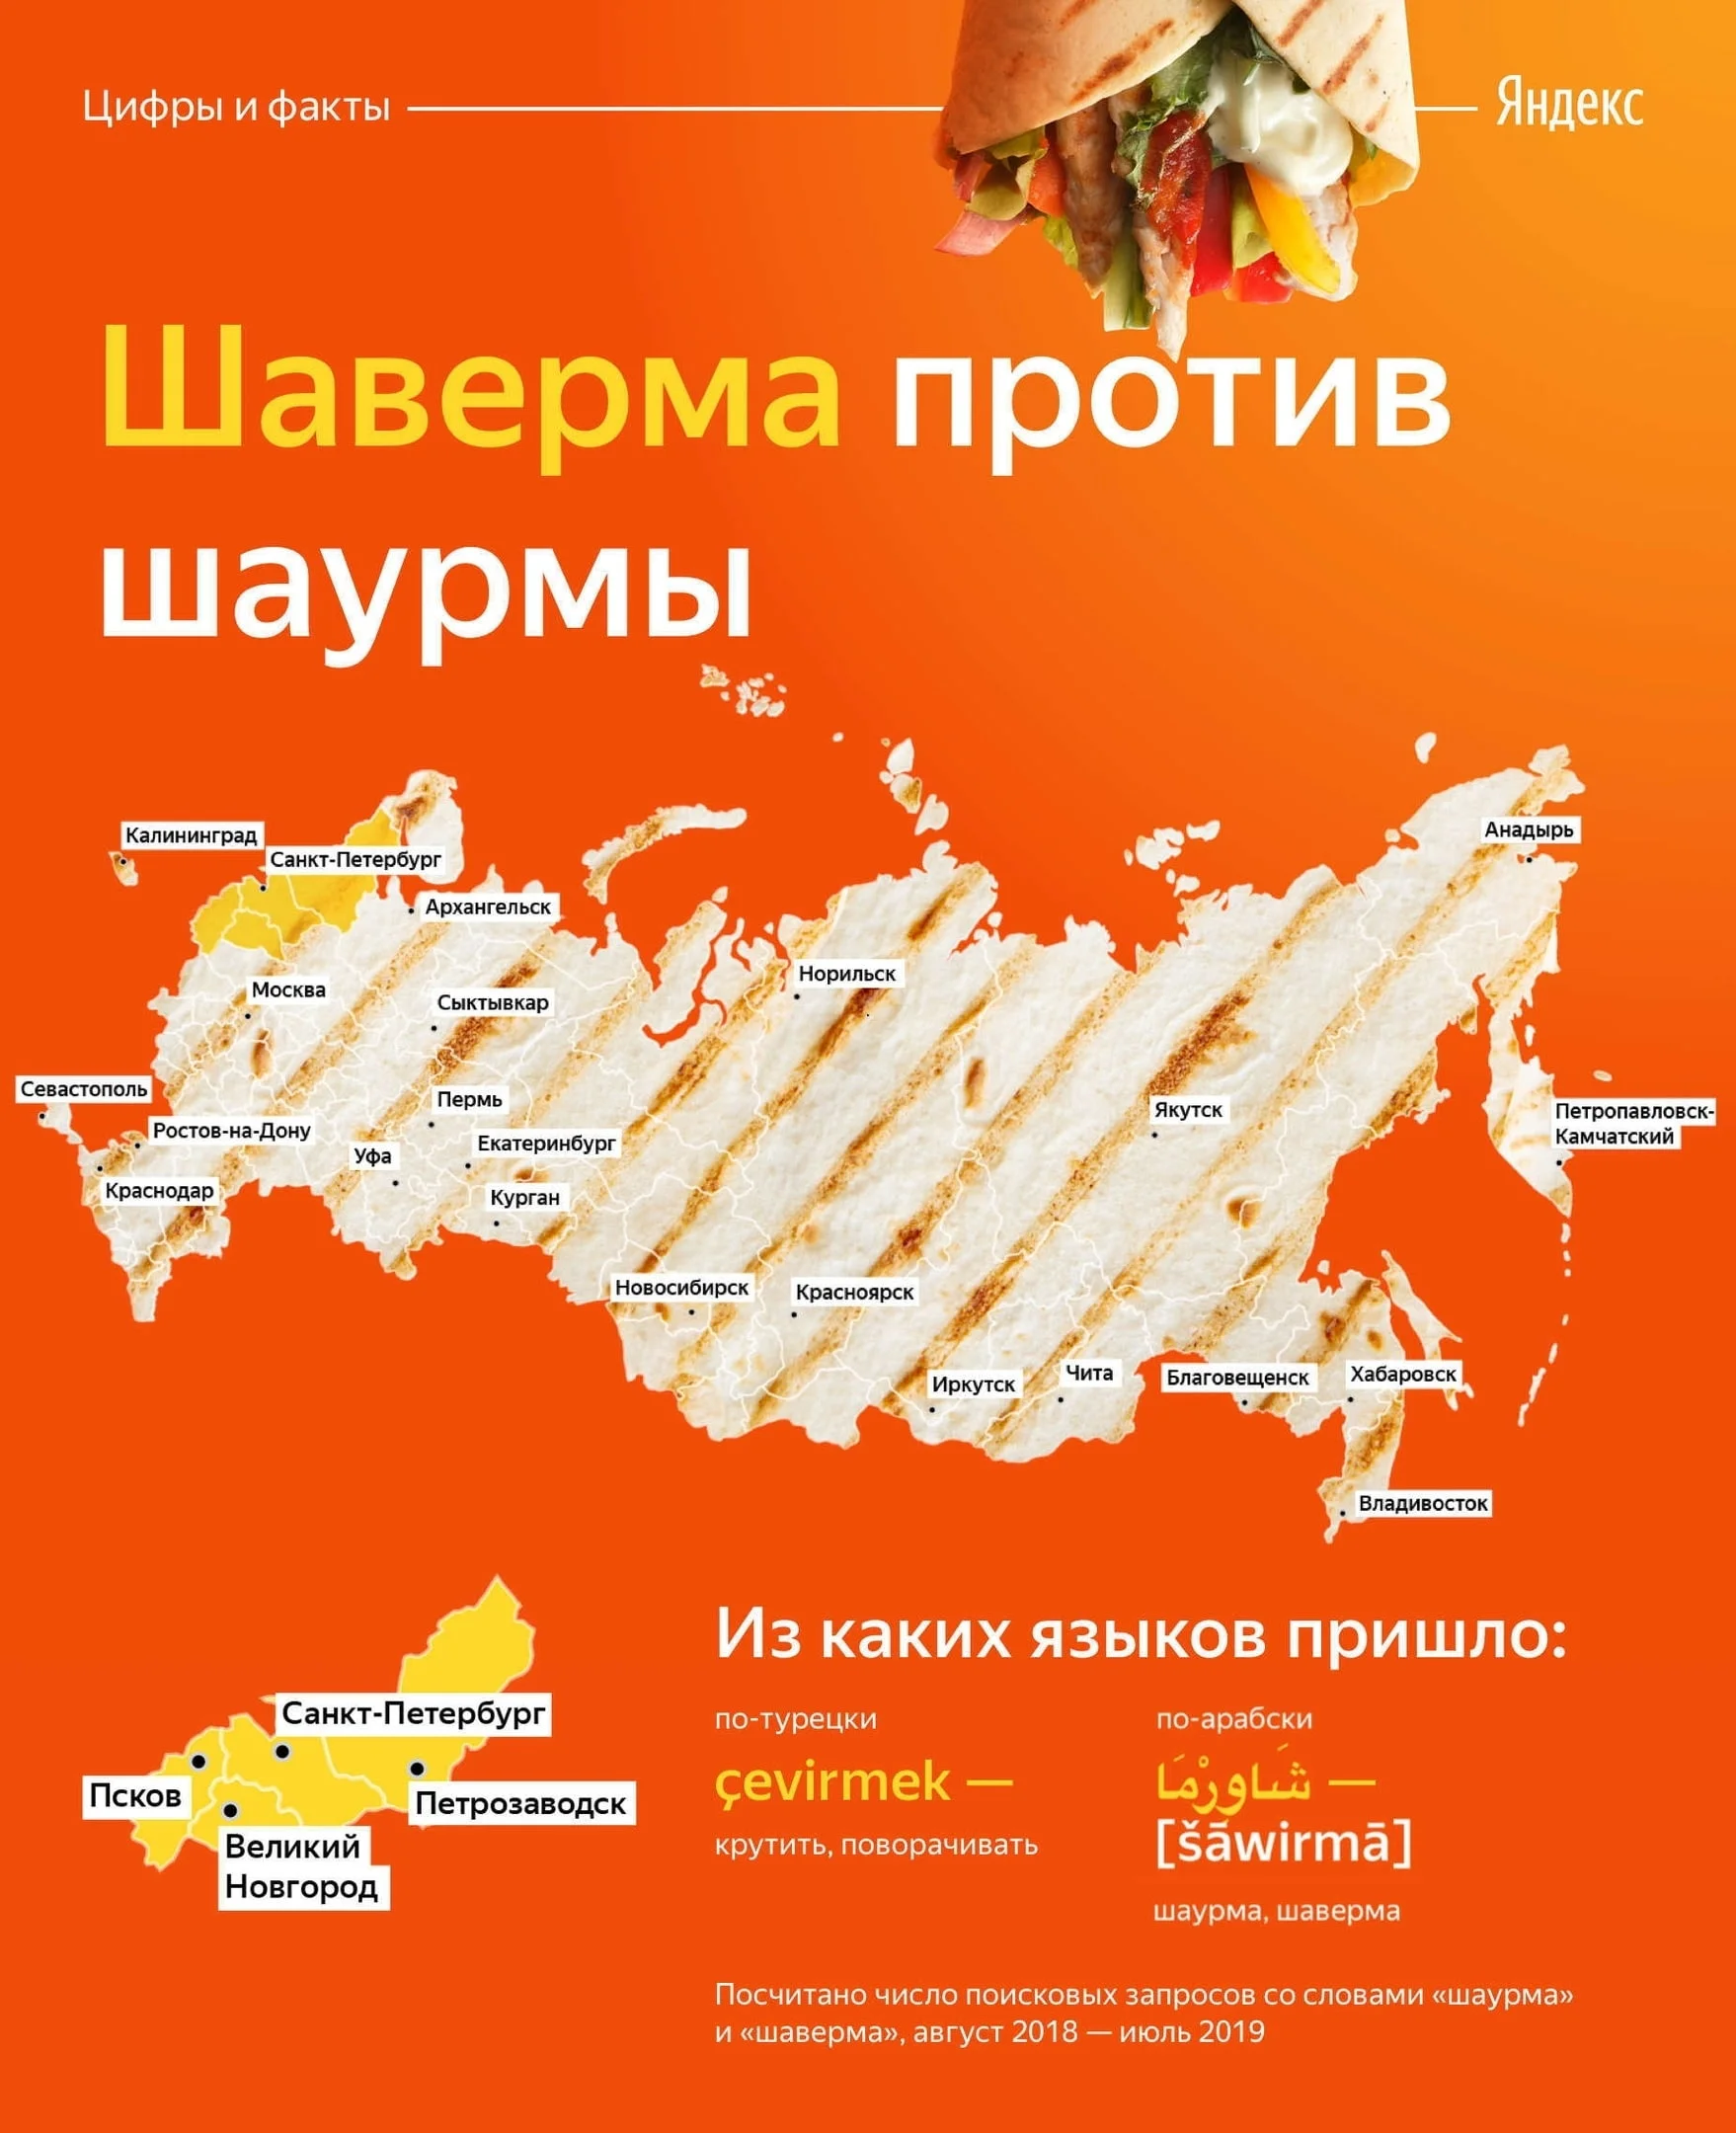 Шаверма или шаурма?! «Яндекс» выяснил, как в России называют главное блюдо уличной кухни - фото 2